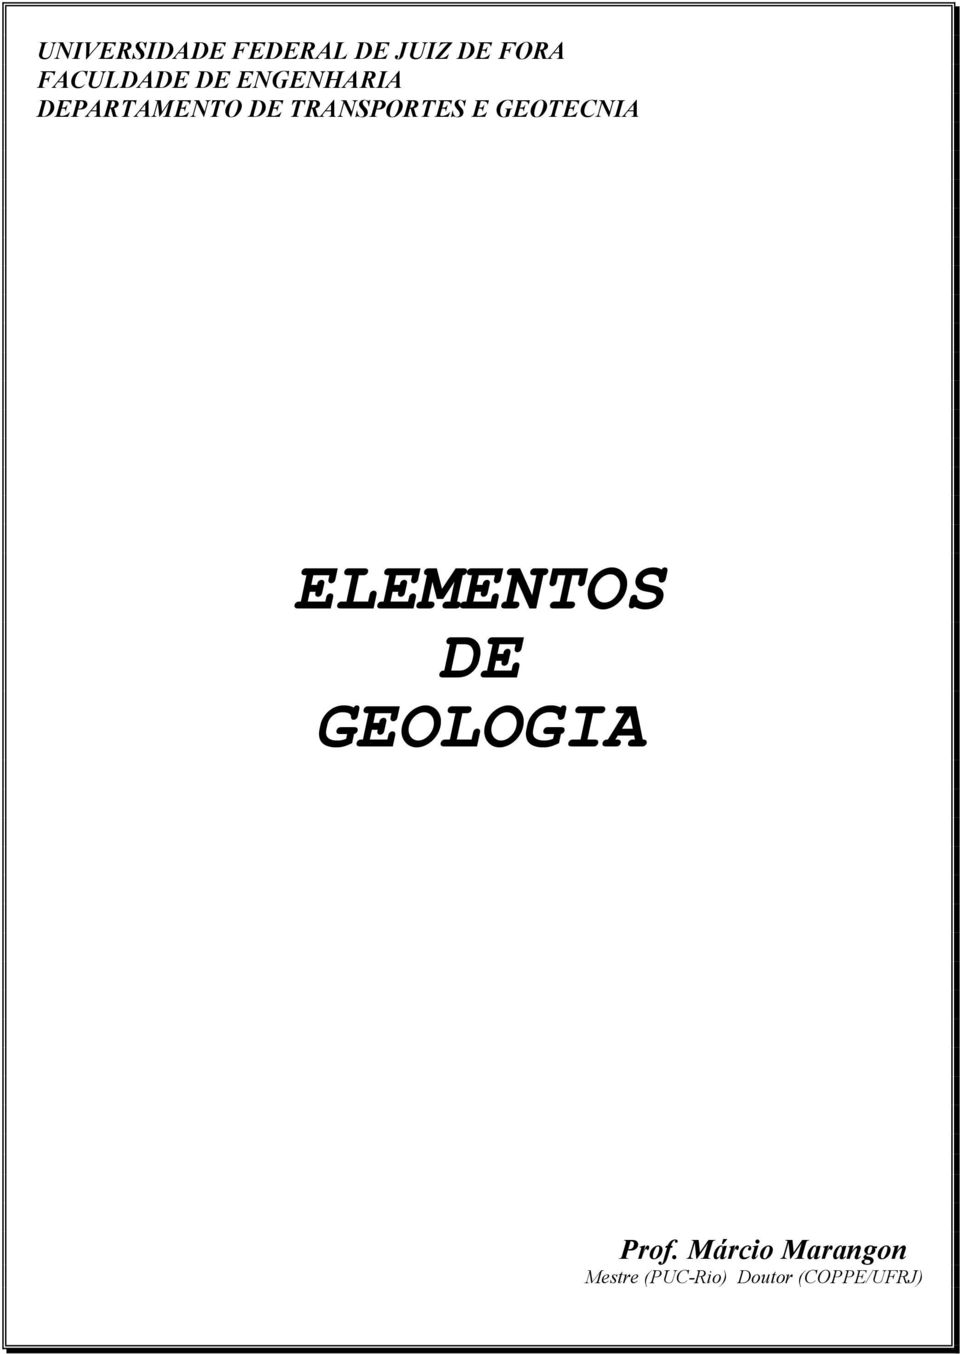 TRANSPORTES E GEOTECNIA ELEMENTOS DE GEOLOGIA